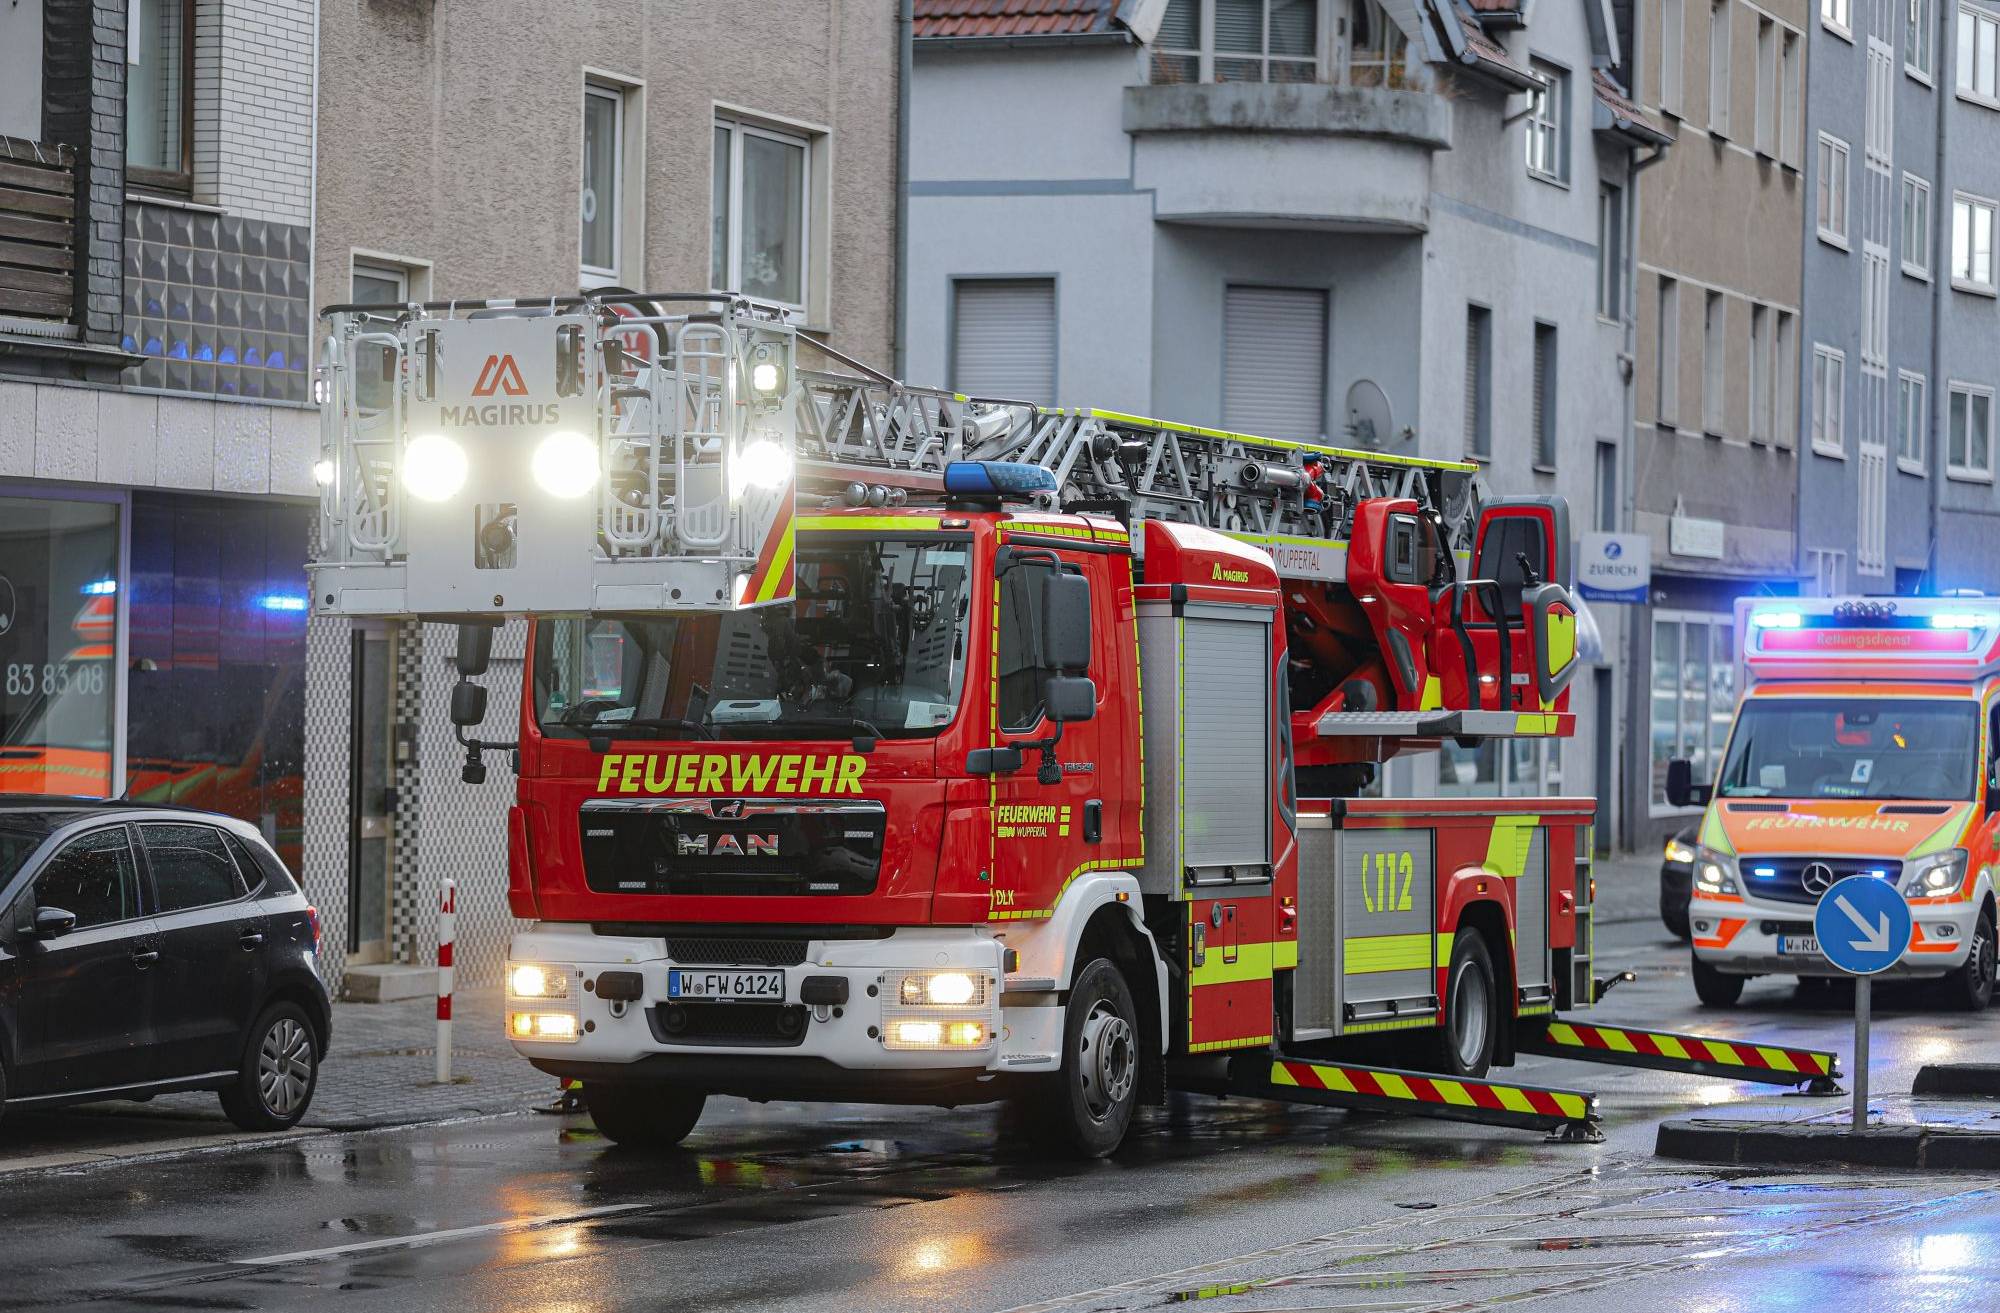 Heiße Pfanne löst Feuerwehr-Einsatz aus